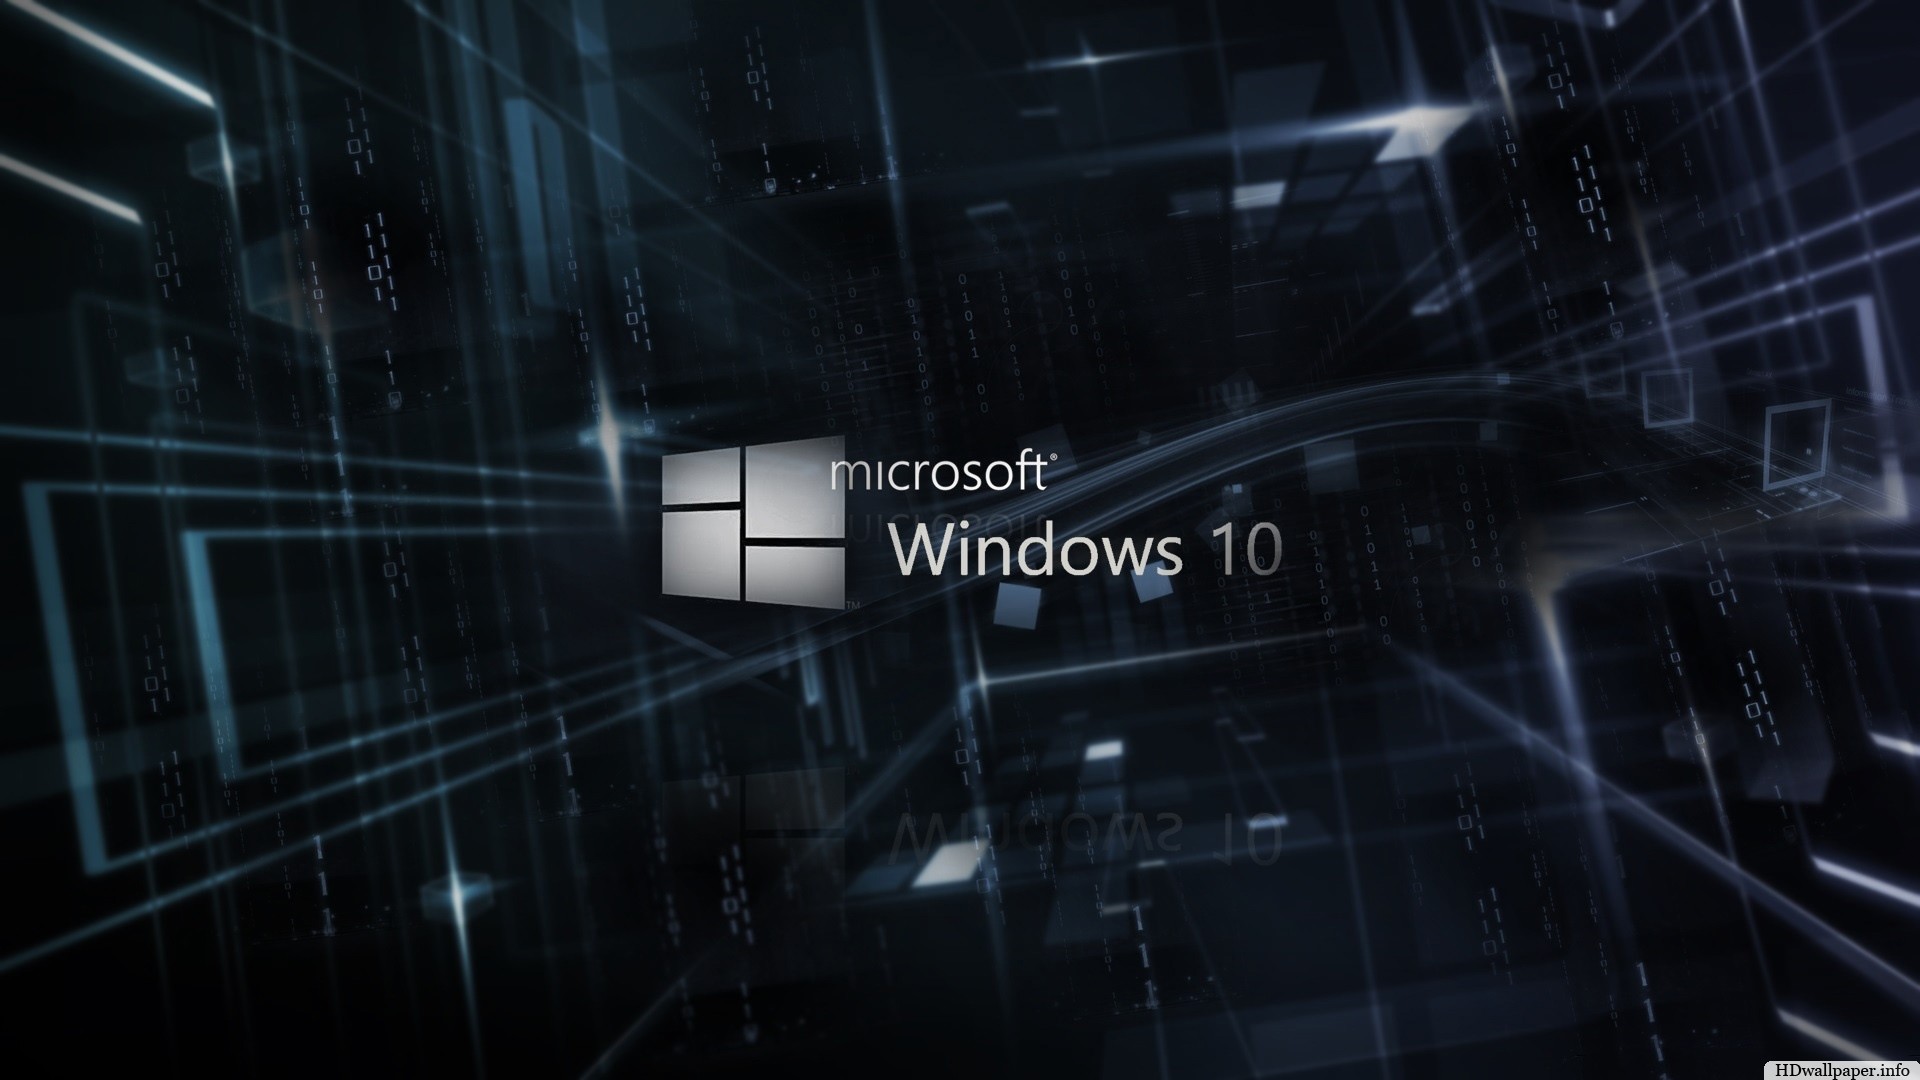 1920x1080 windows 10 wallpaper hd 3d - http://hdwallpaper.info/windows-